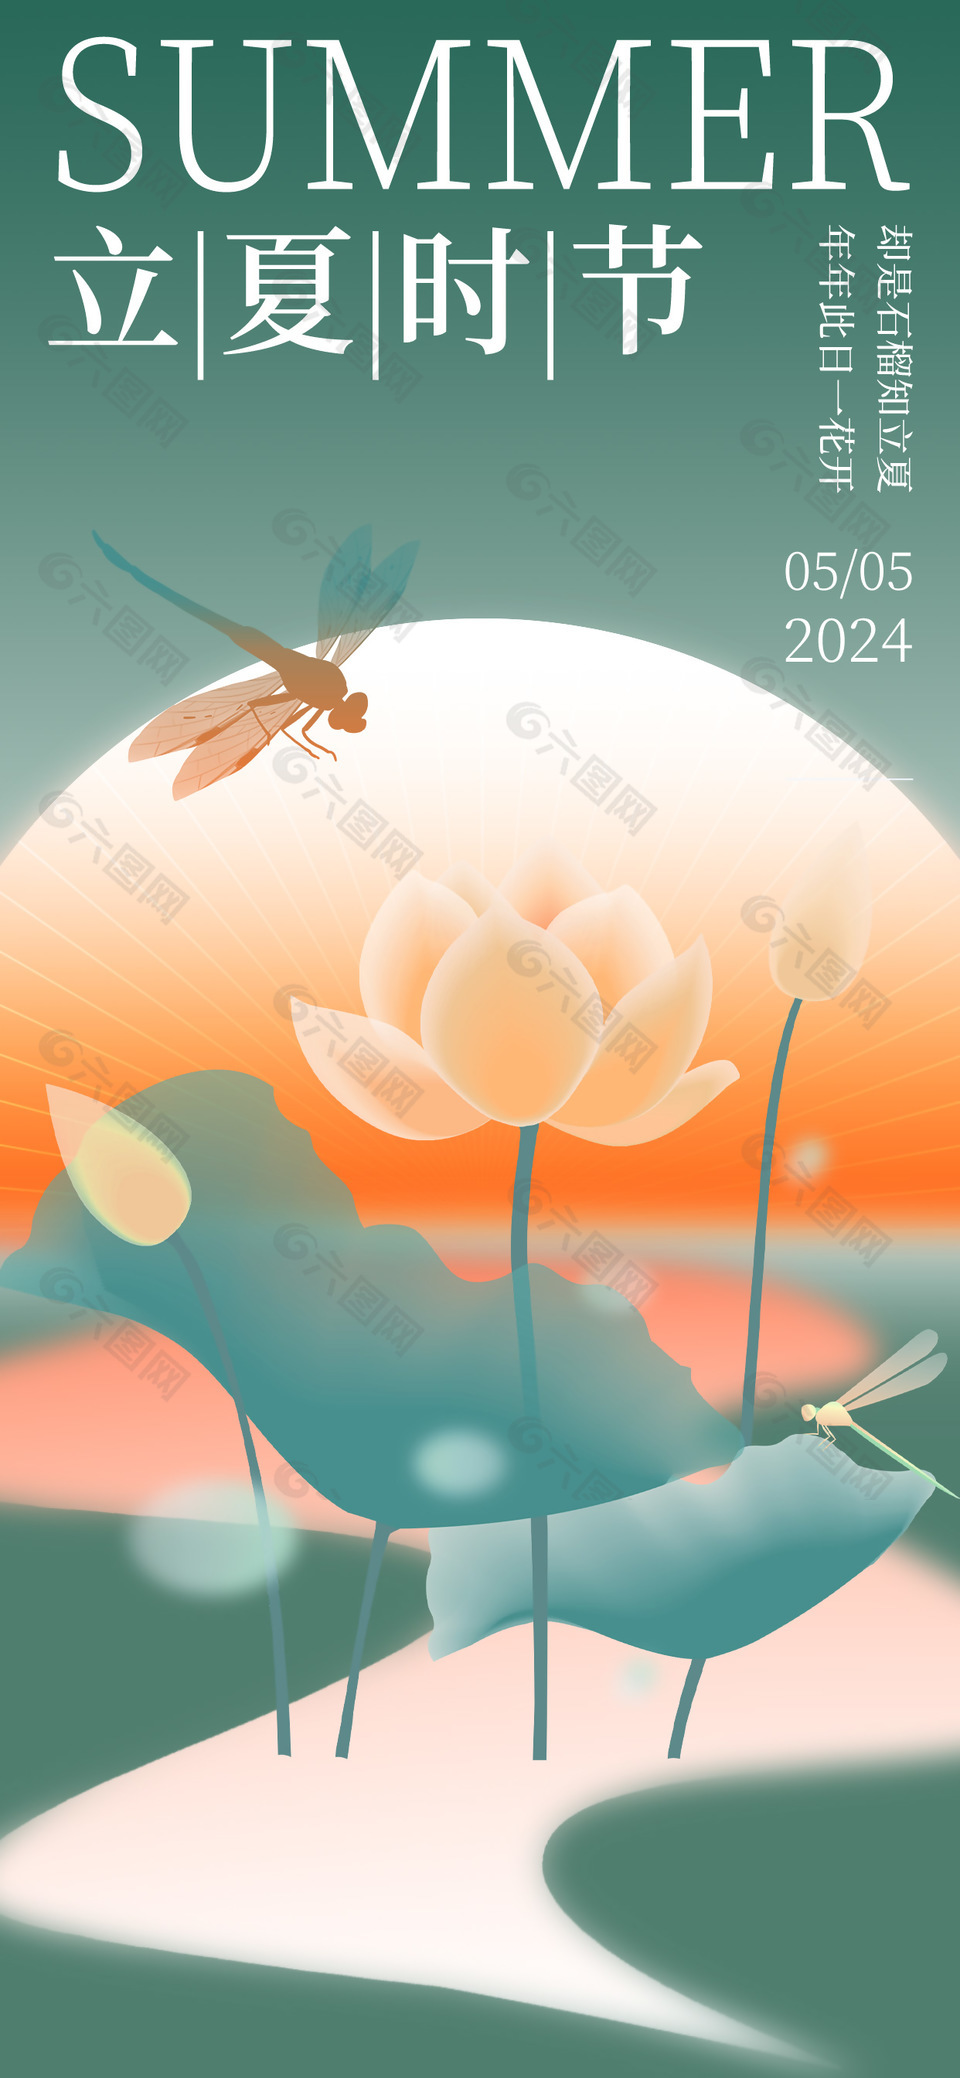 立夏时节创意蜻蜓荷花元素手绘海报